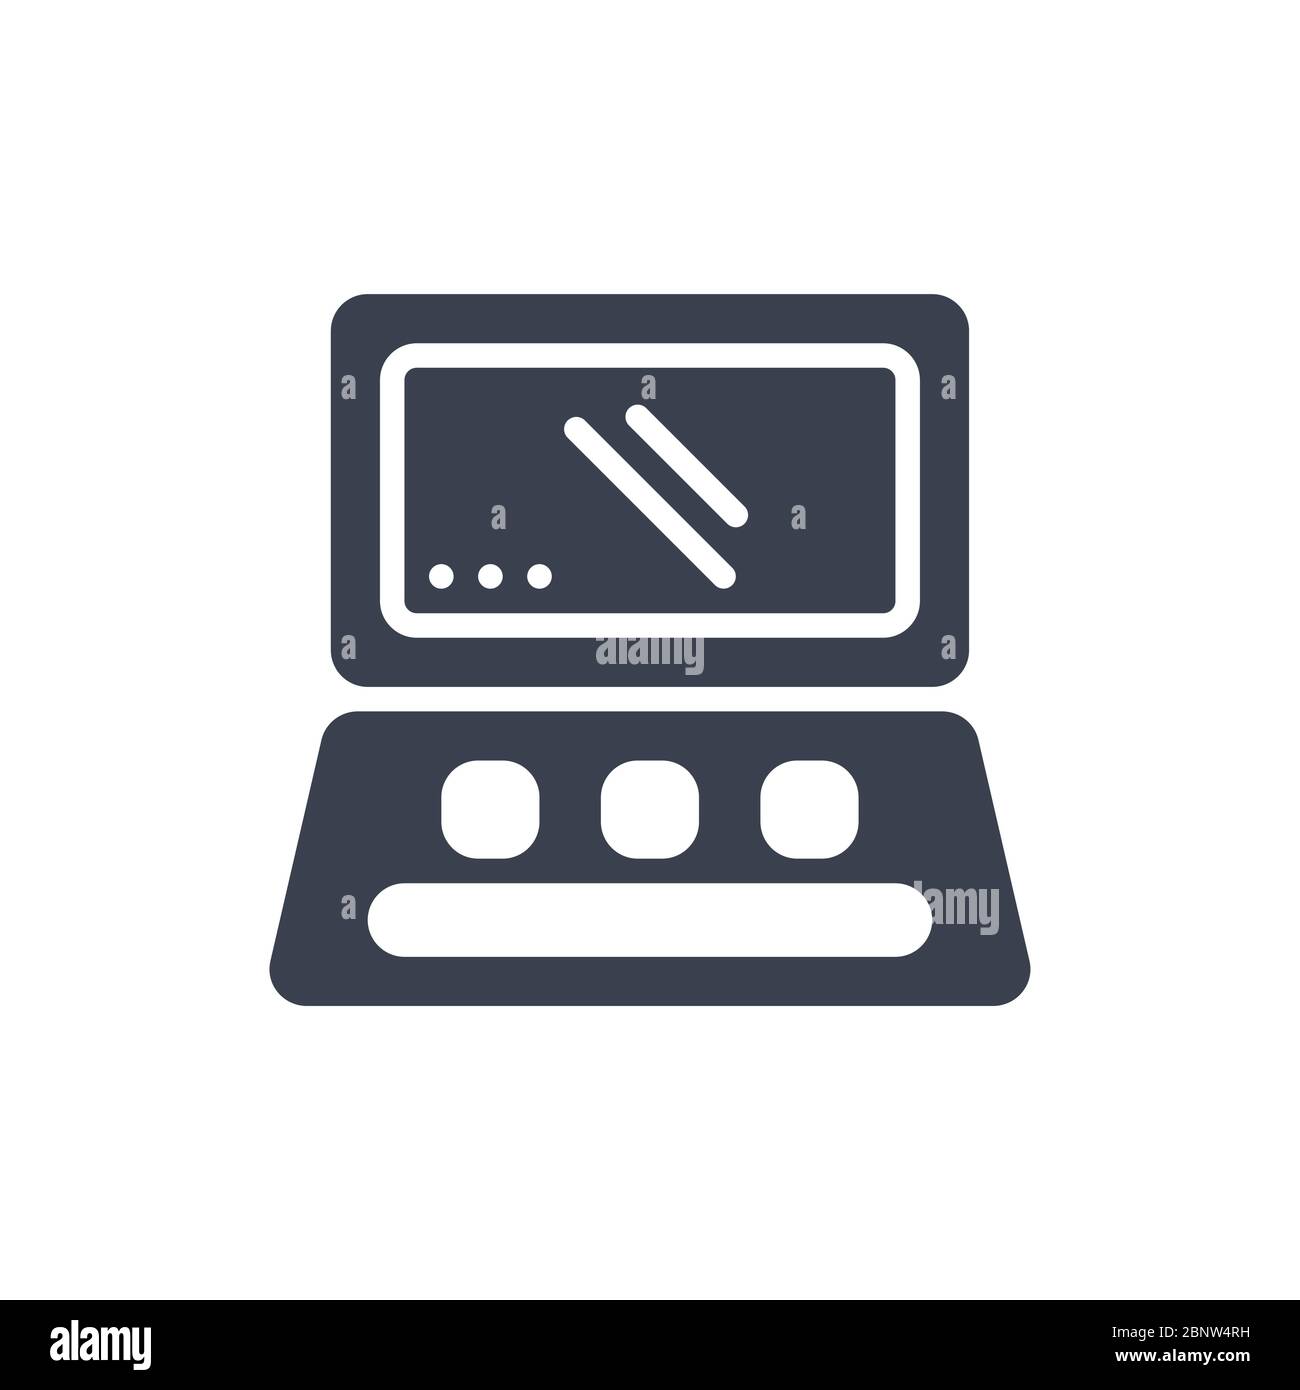 Immagine vettoriale dell'icona o del logo del computer portatile con colore nero e stile di design glifo Illustrazione Vettoriale